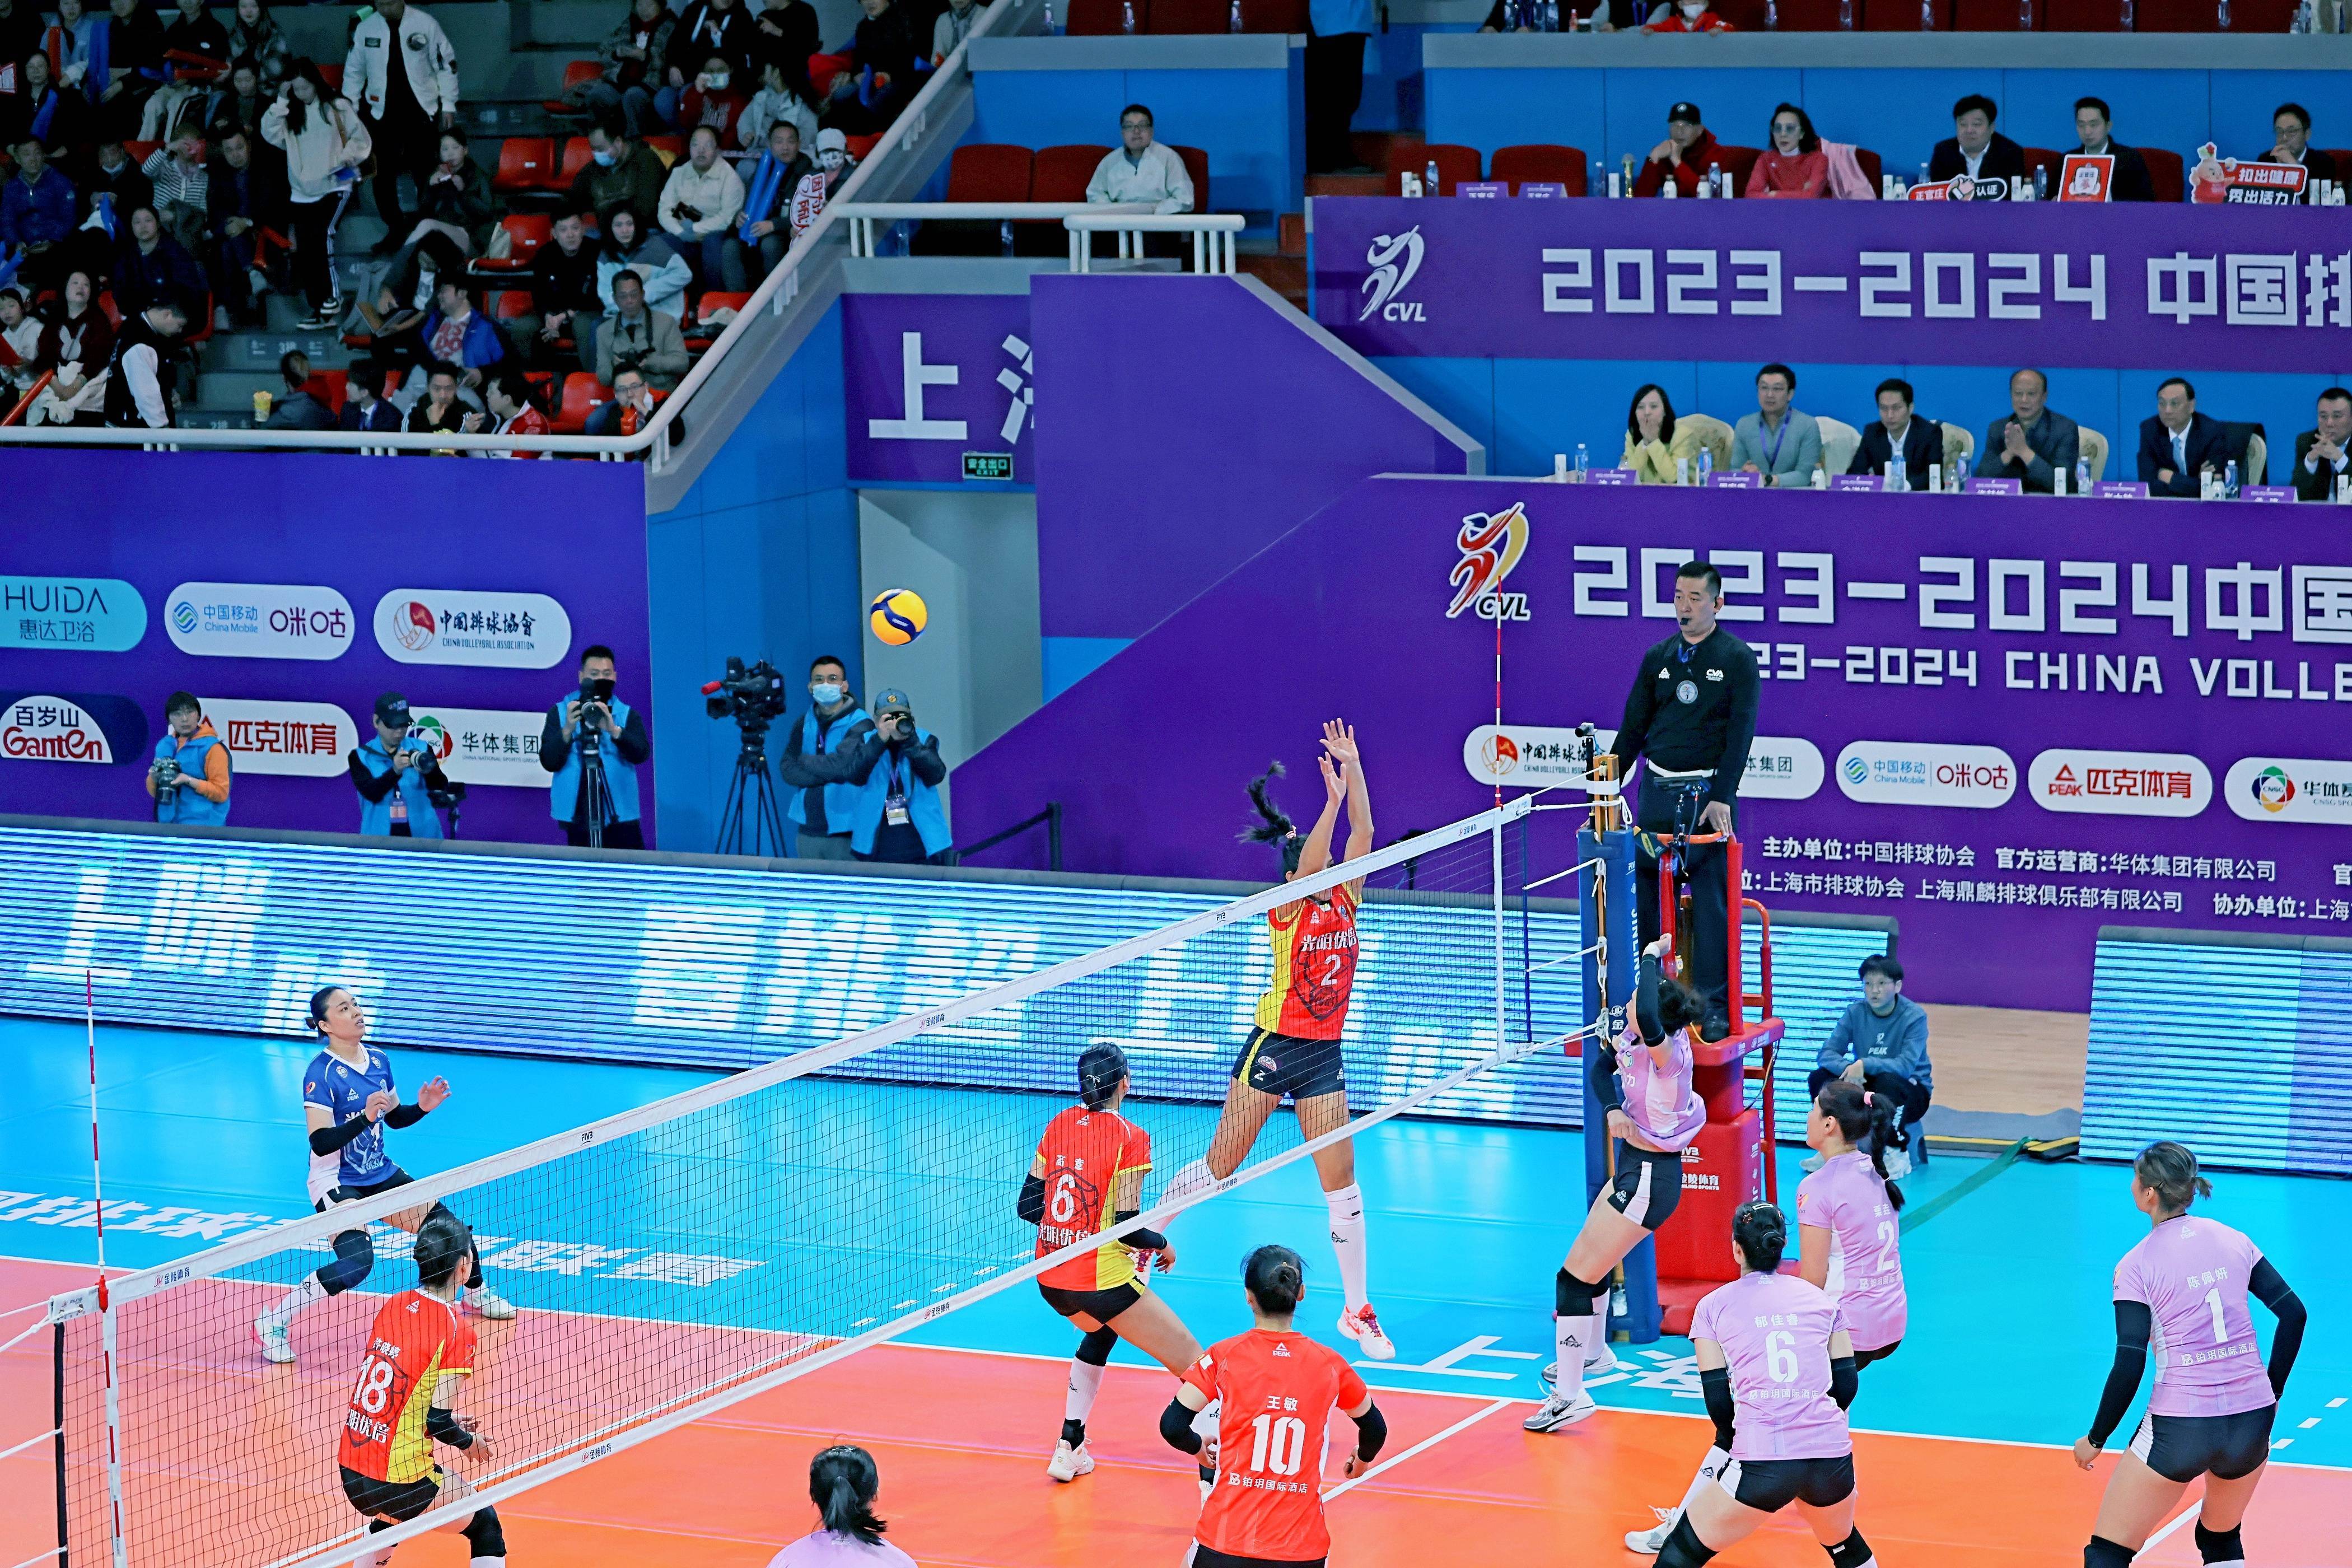 上海男女排新赛季新起点,申城青少年排球后继有人